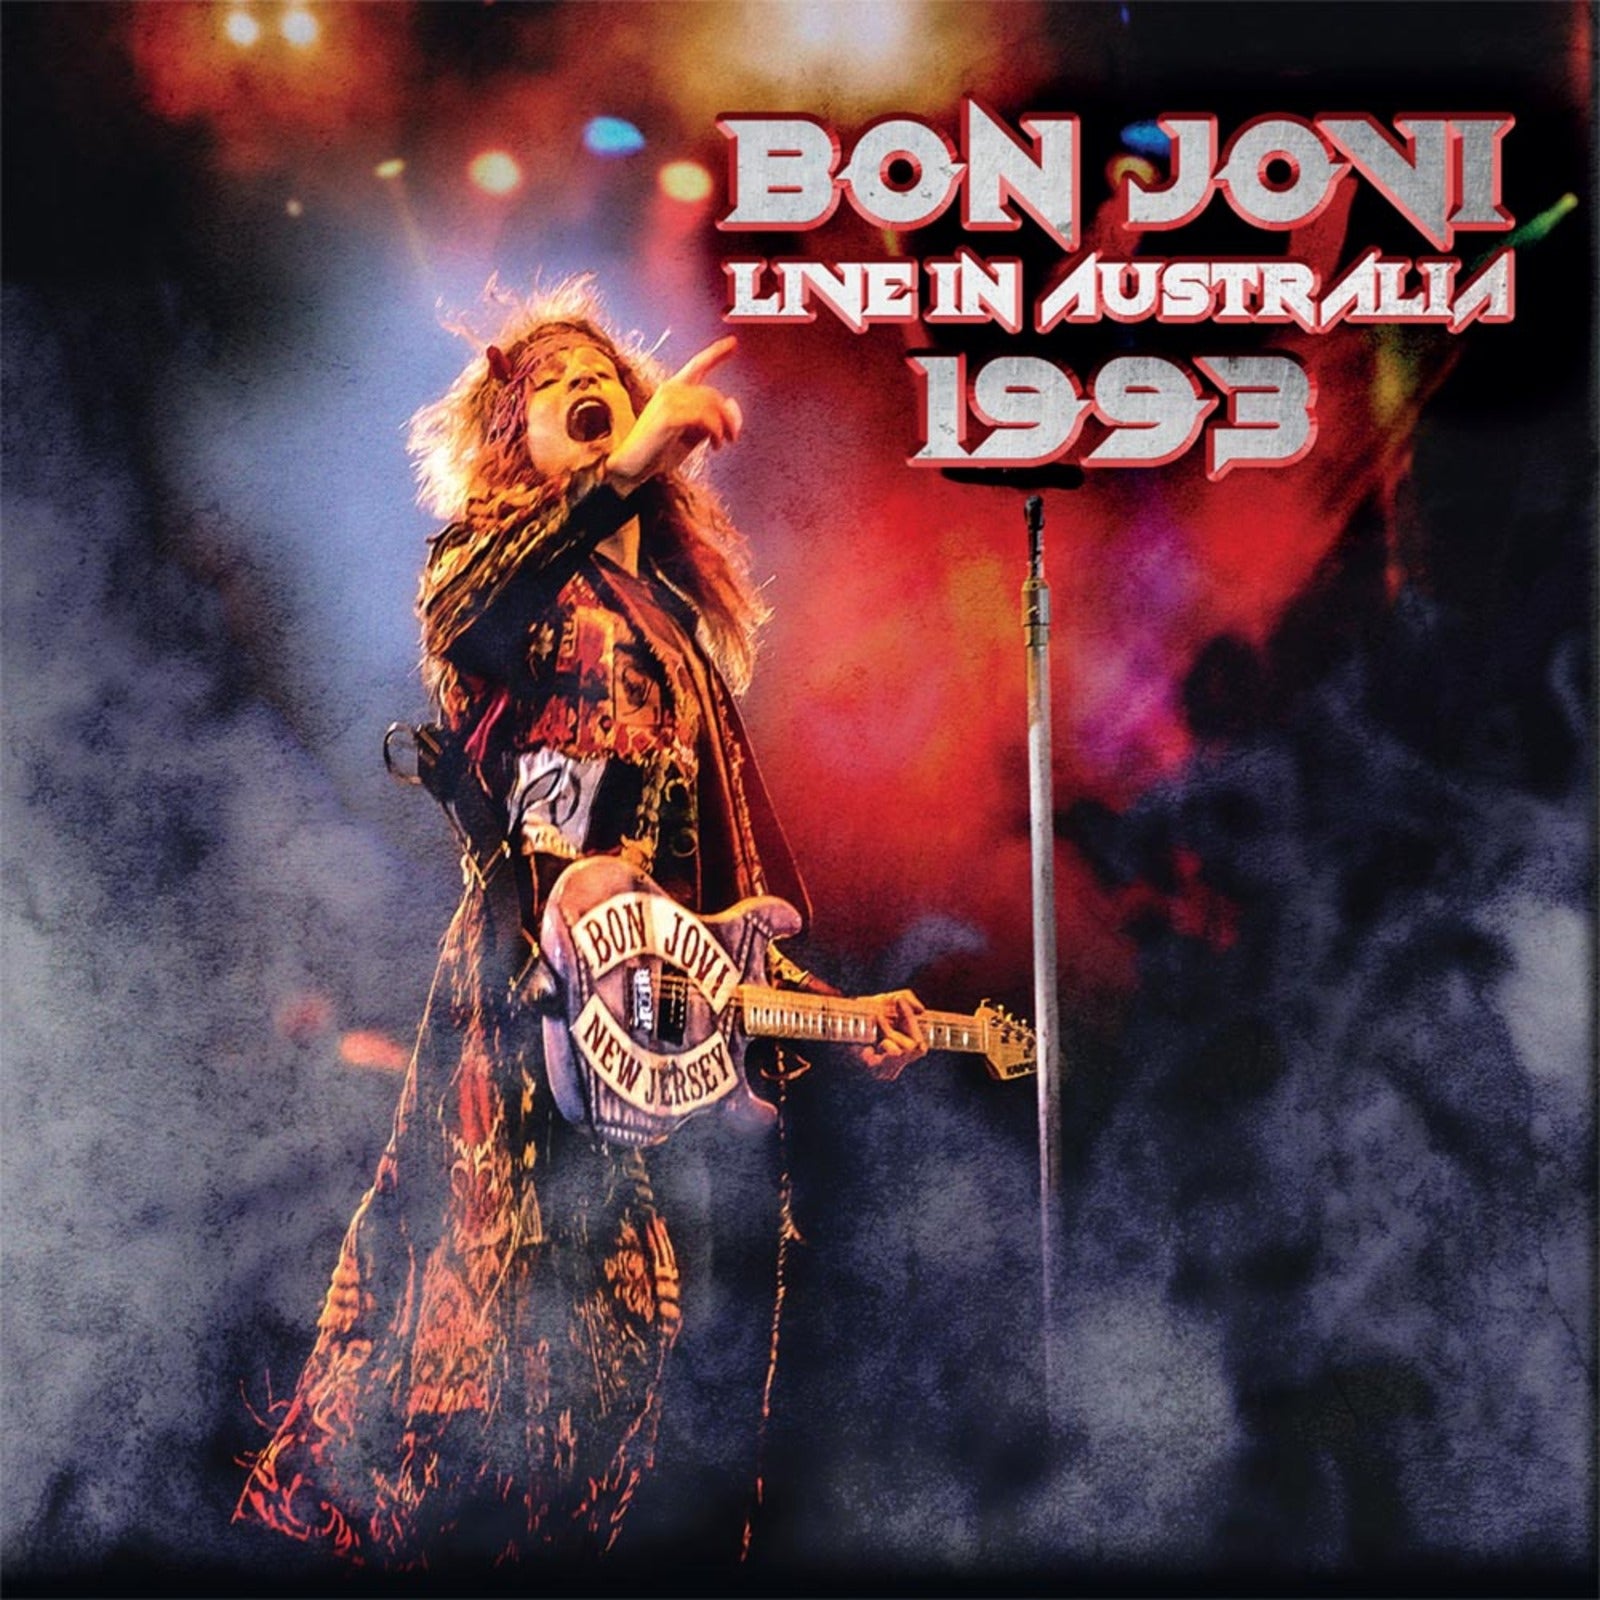 Bon Jovi: Live In Australia 1993 – Proper Music